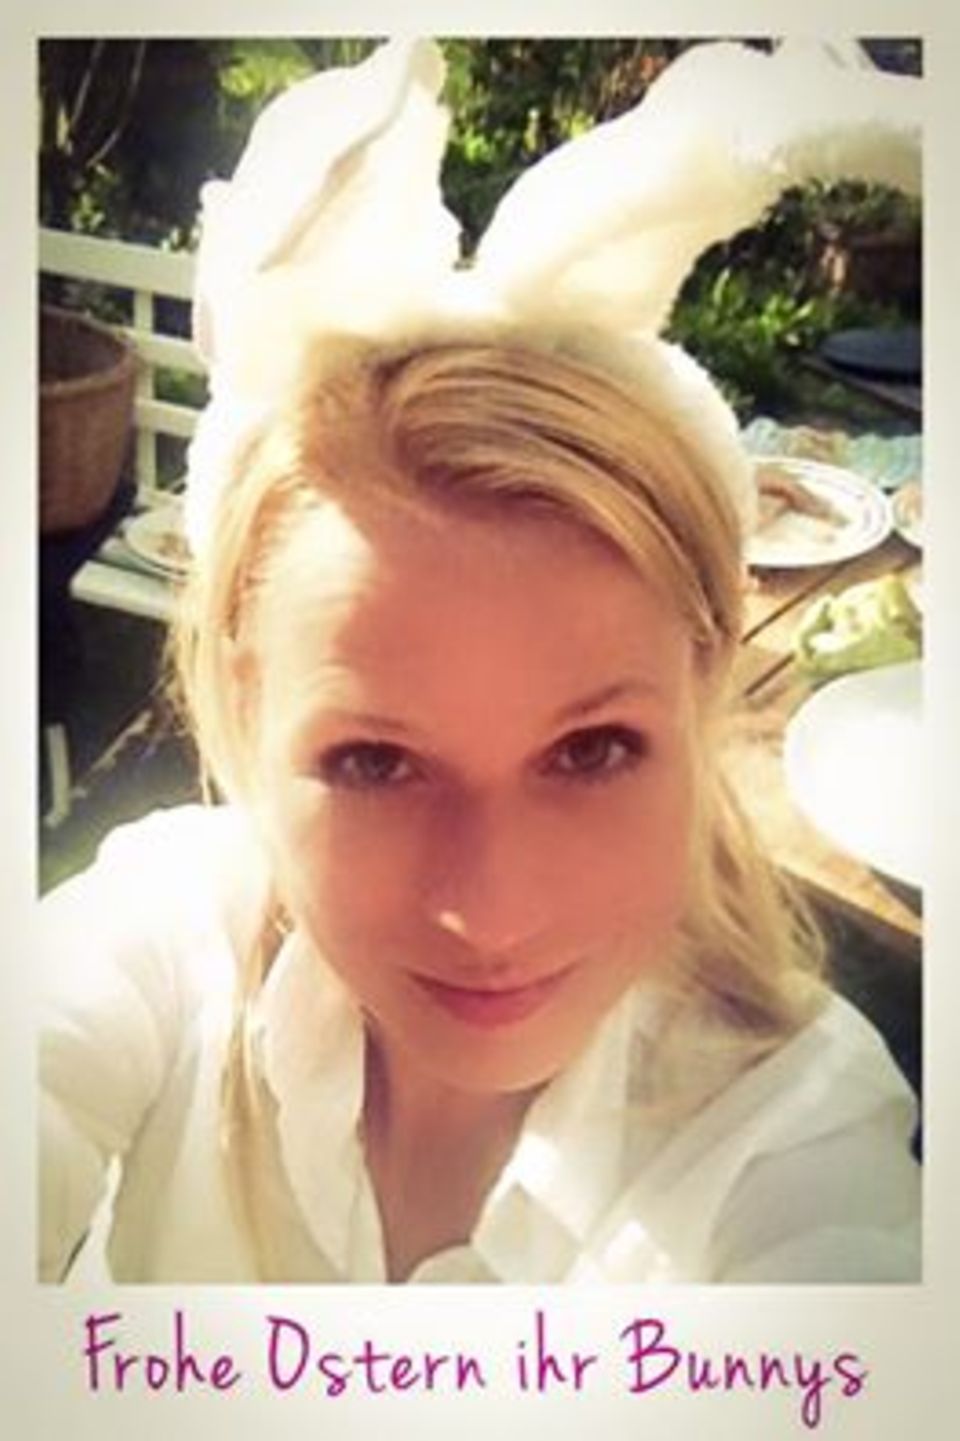 "Ich wünsche euch allen ein frohes Osterwochenende!", schreibt Nova Meierhenrich zu ihrem Bunny-Selfie.